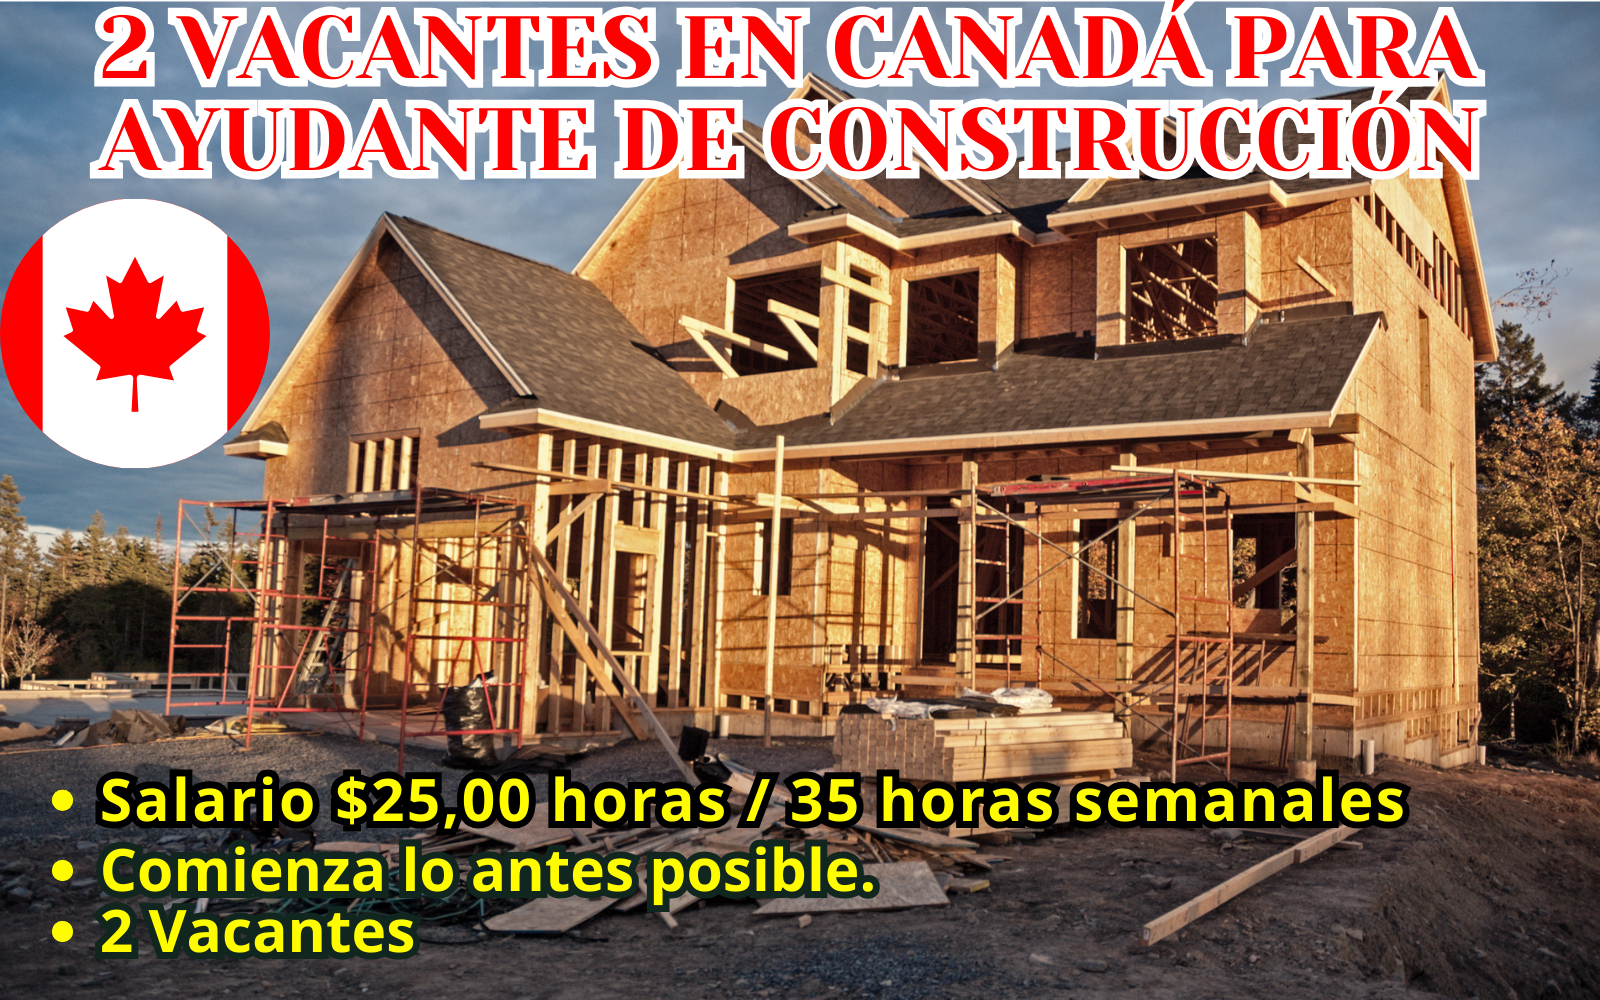 2 VACANTES EN CANADÁ PARA AYUDANTE DE CONSTRUCCIÓN